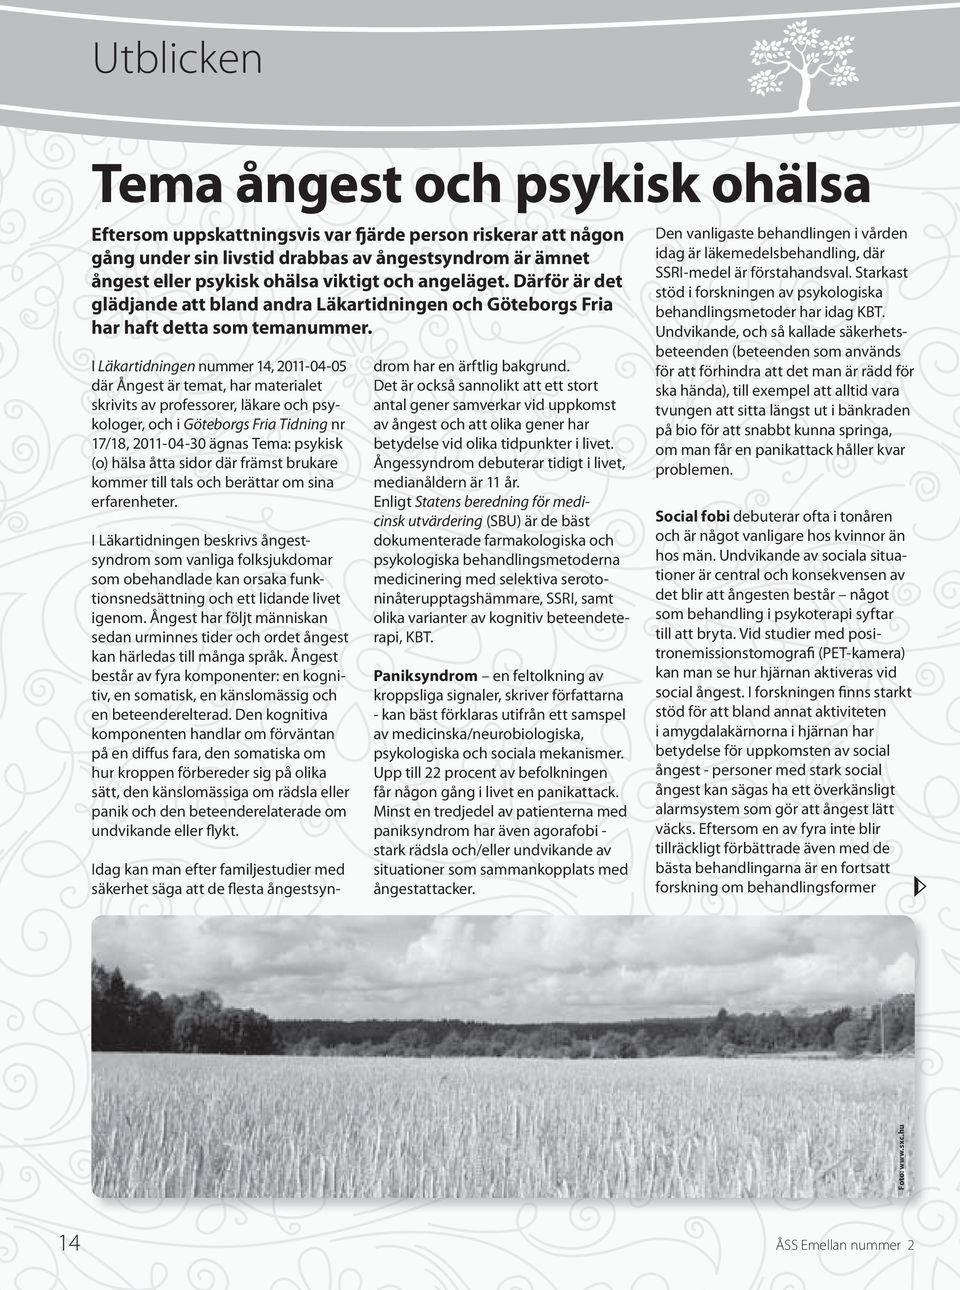 I Läkartidningen nummer 14, 2011-04-05 där Ångest är temat, har materialet skrivits av professorer, läkare och psykologer, och i Göteborgs Fria Tidning nr 17/18, 2011-04-30 ägnas Tema: psykisk (o)